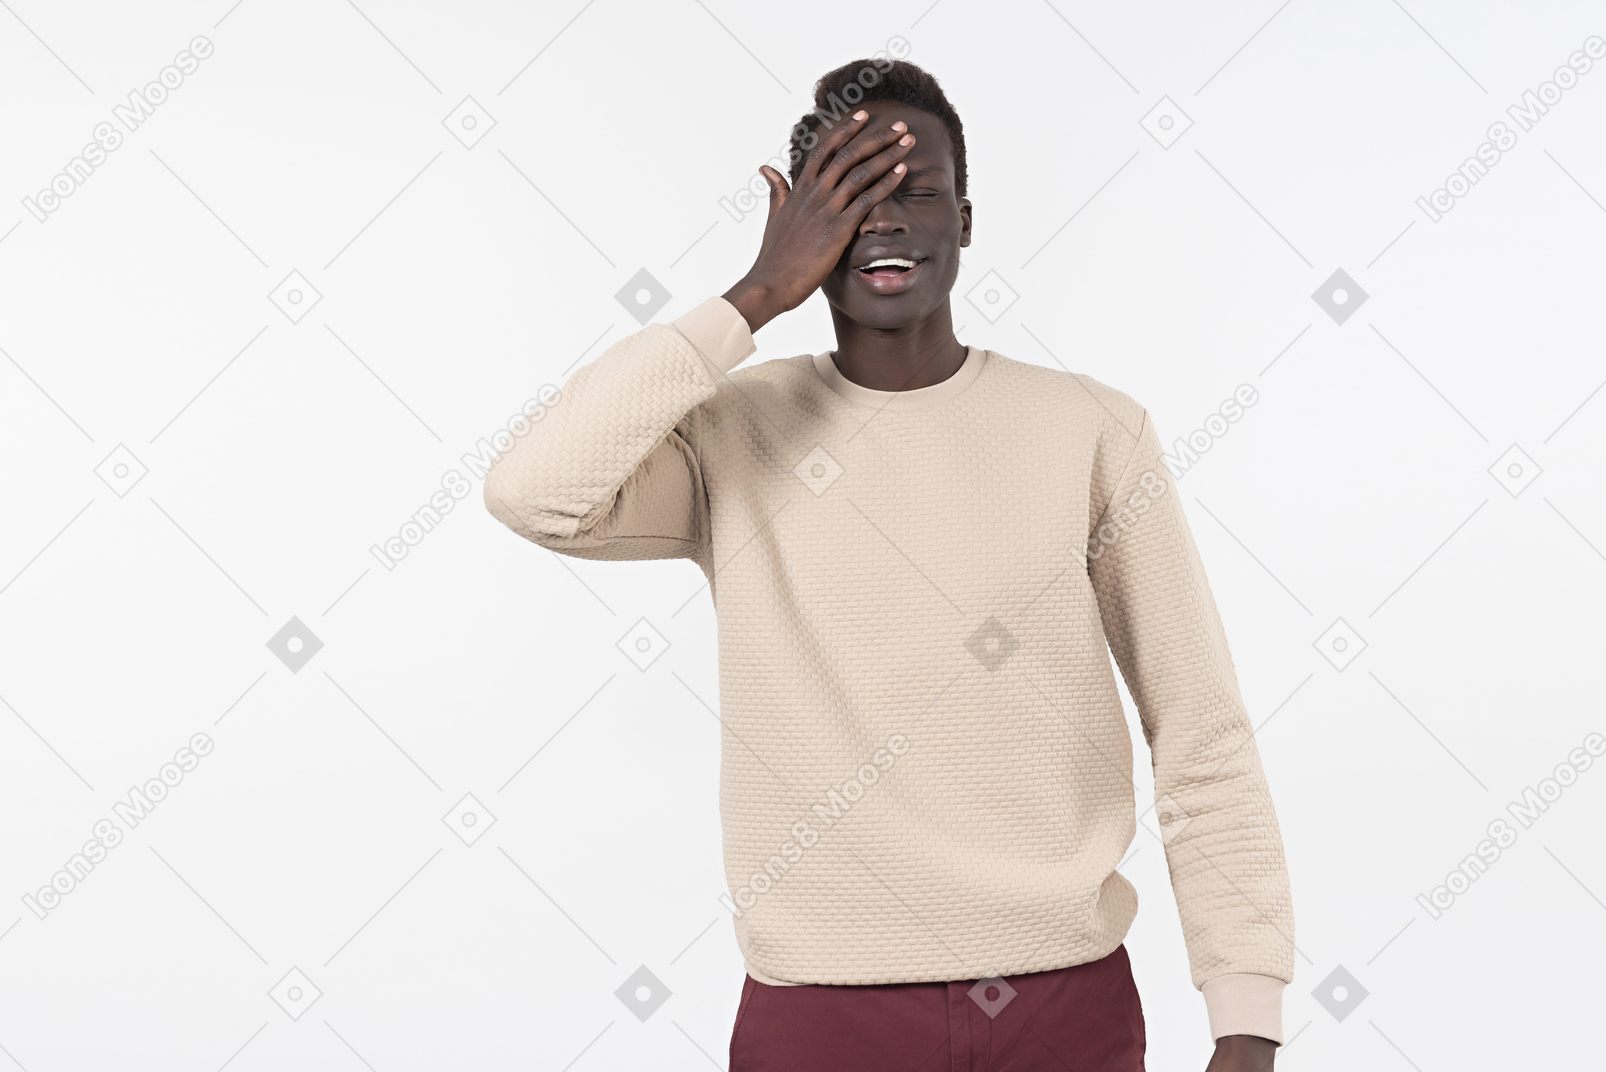 Un jeune homme noir dans un pull gris debout seul sur le fond blanc